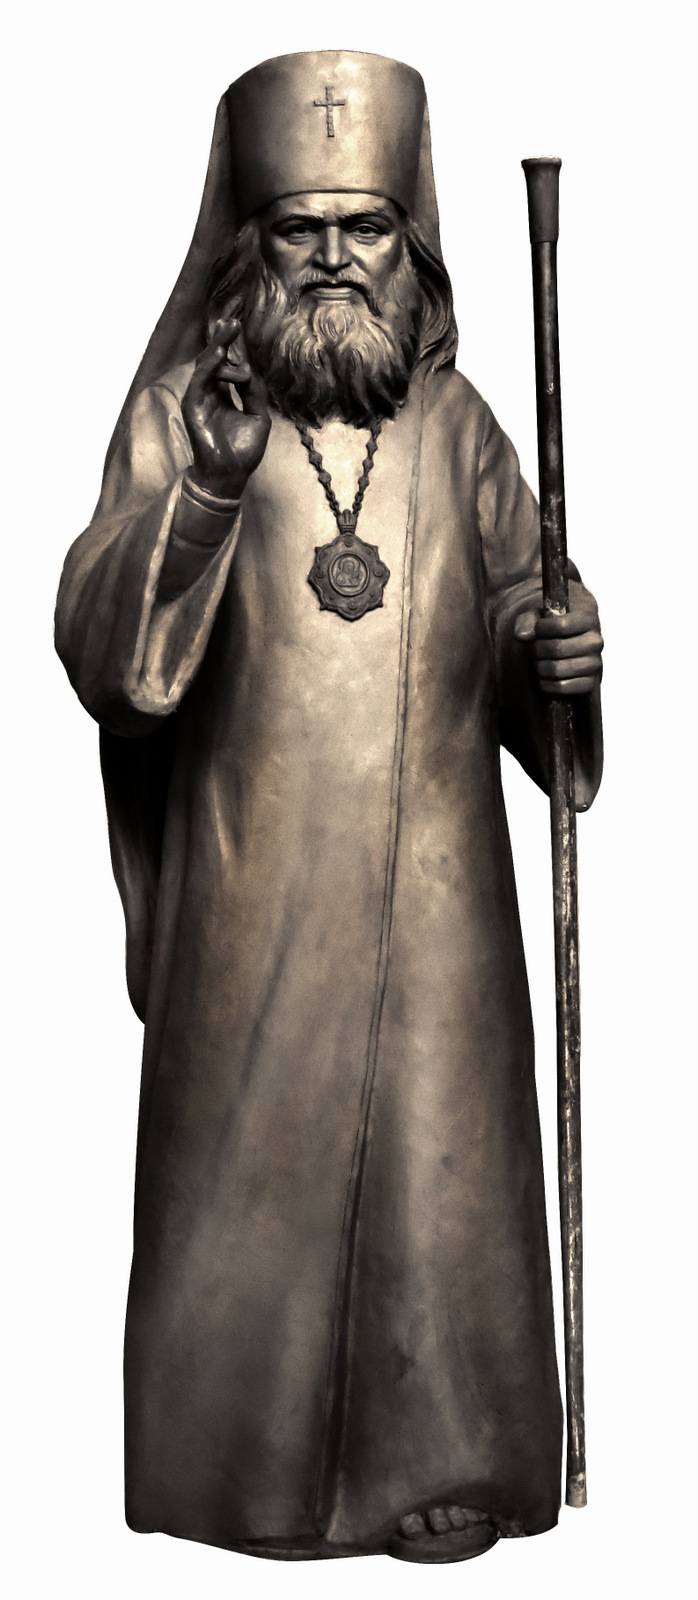 Памятник Святителю Иоанну Шанхайскому будет открыт в Сан-Франциско